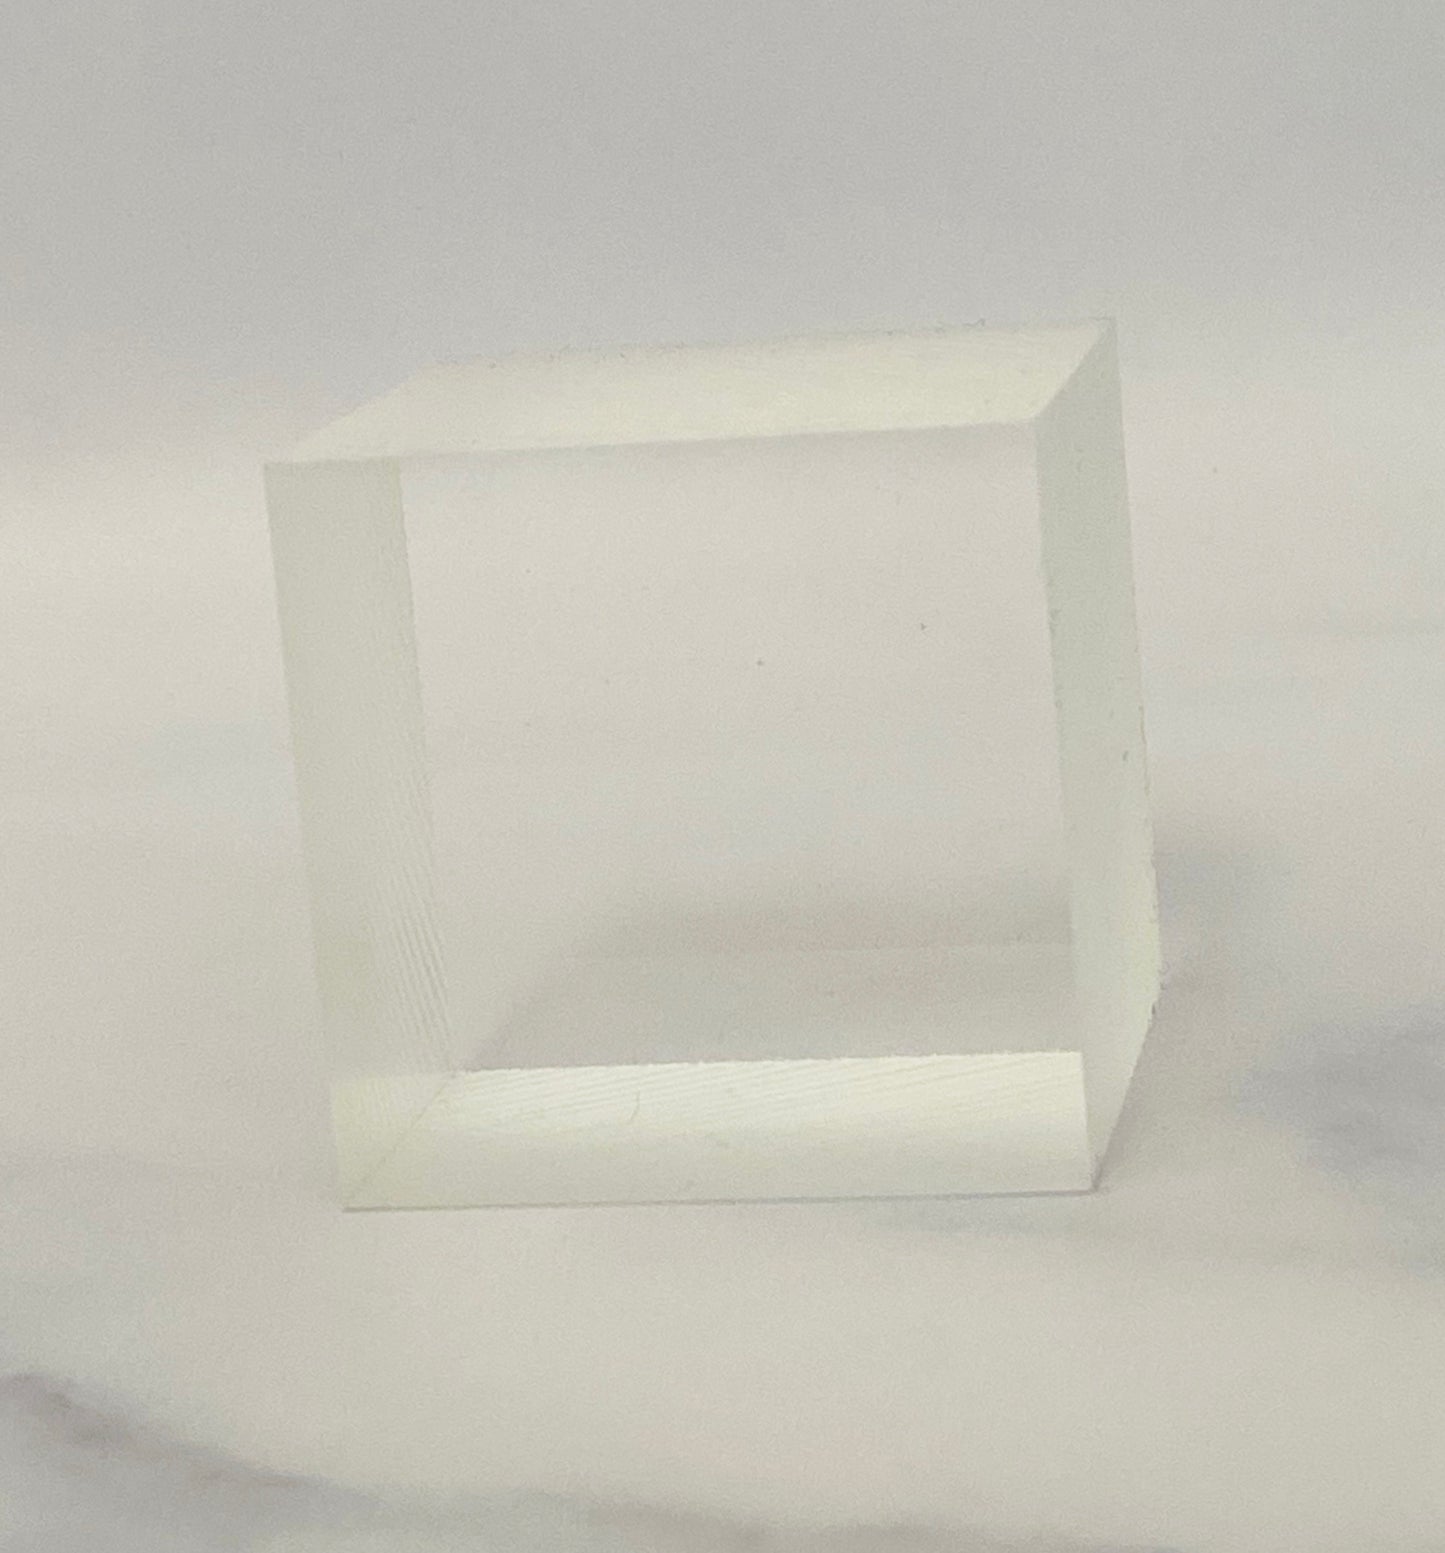 2" x 2" x 2" Unpolished Acrylic Cube